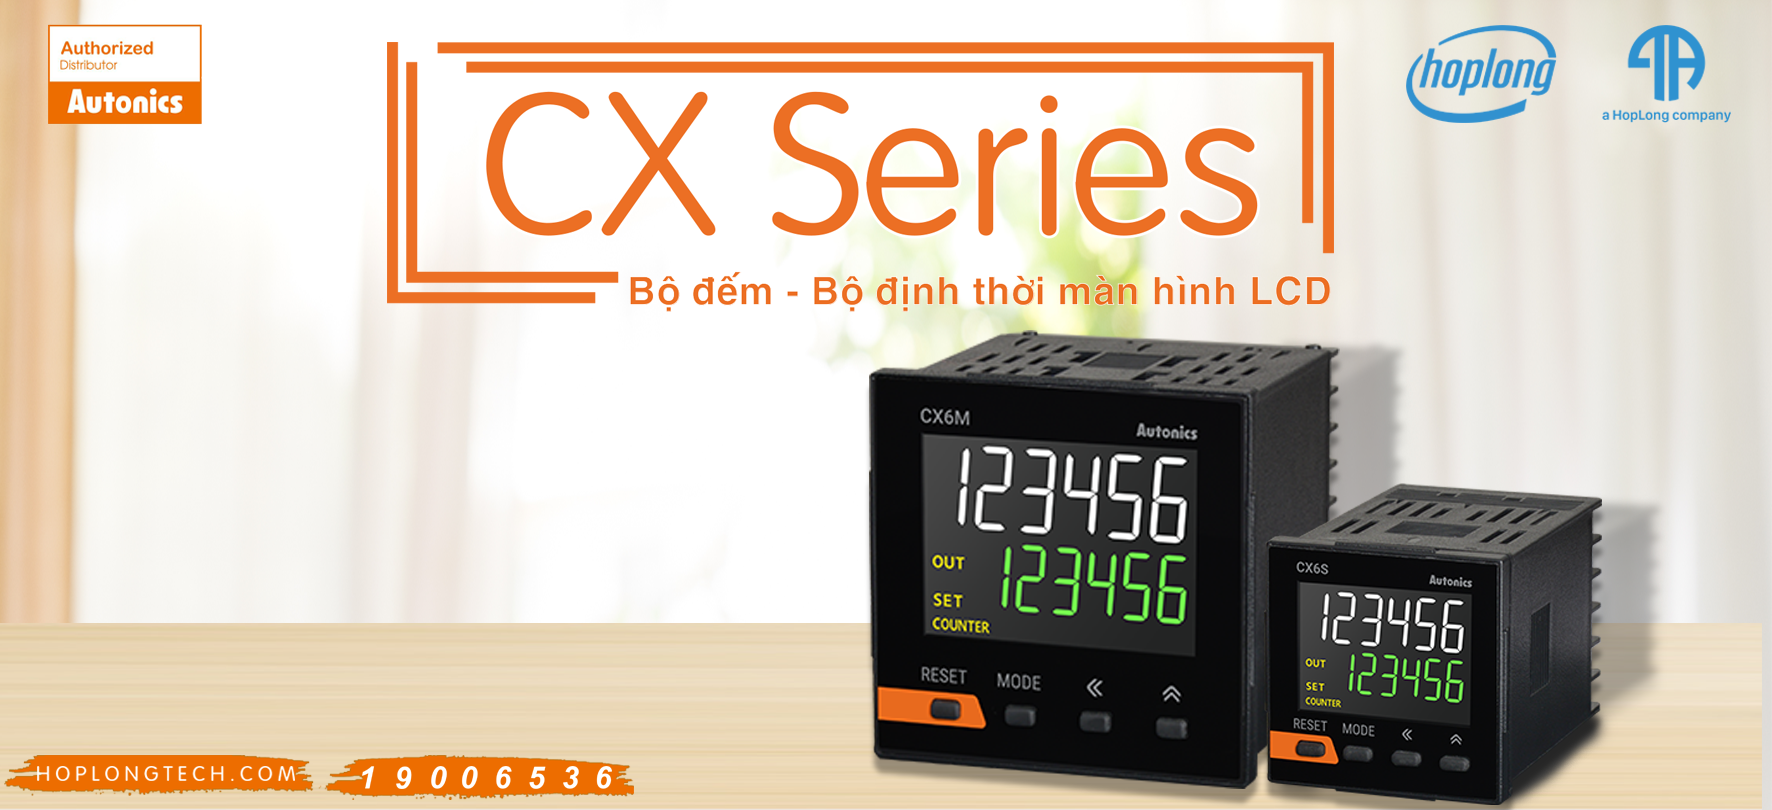 [Autonics - Giới thiệu] CX Series - Bộ đếm / Bộ định thời màn hình LCD